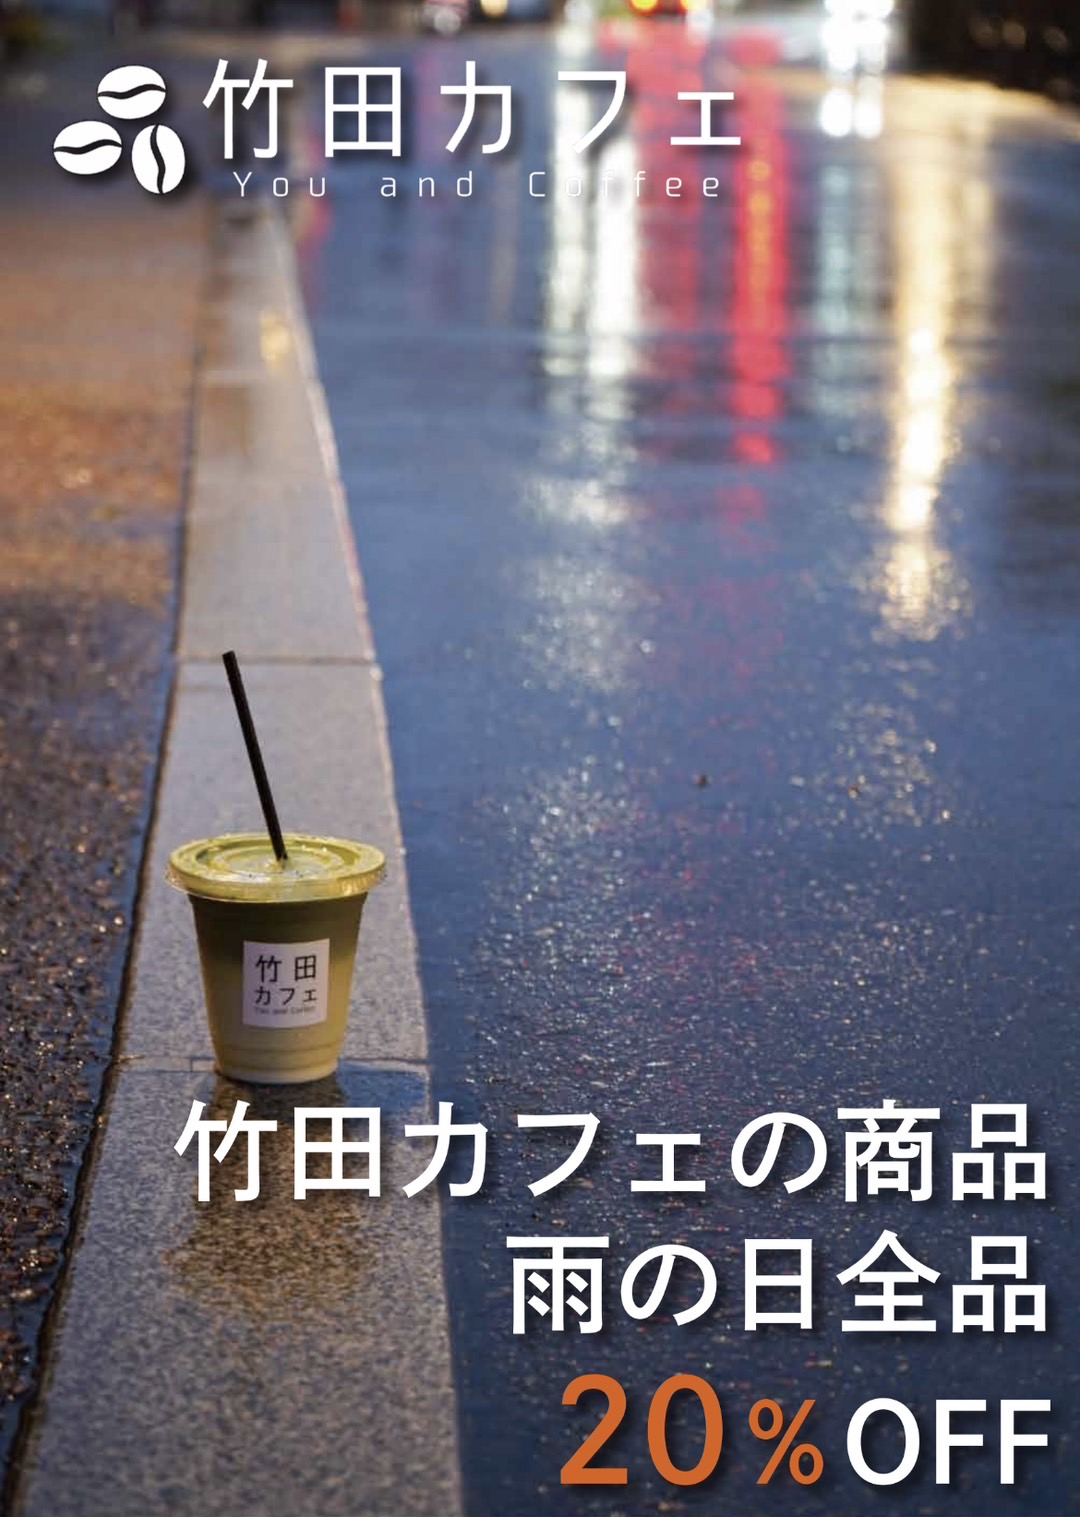 竹田カフェ、梅雨の間全品20% OFFキャンペーン開催！雨の日も美味しさとお得感を堪能